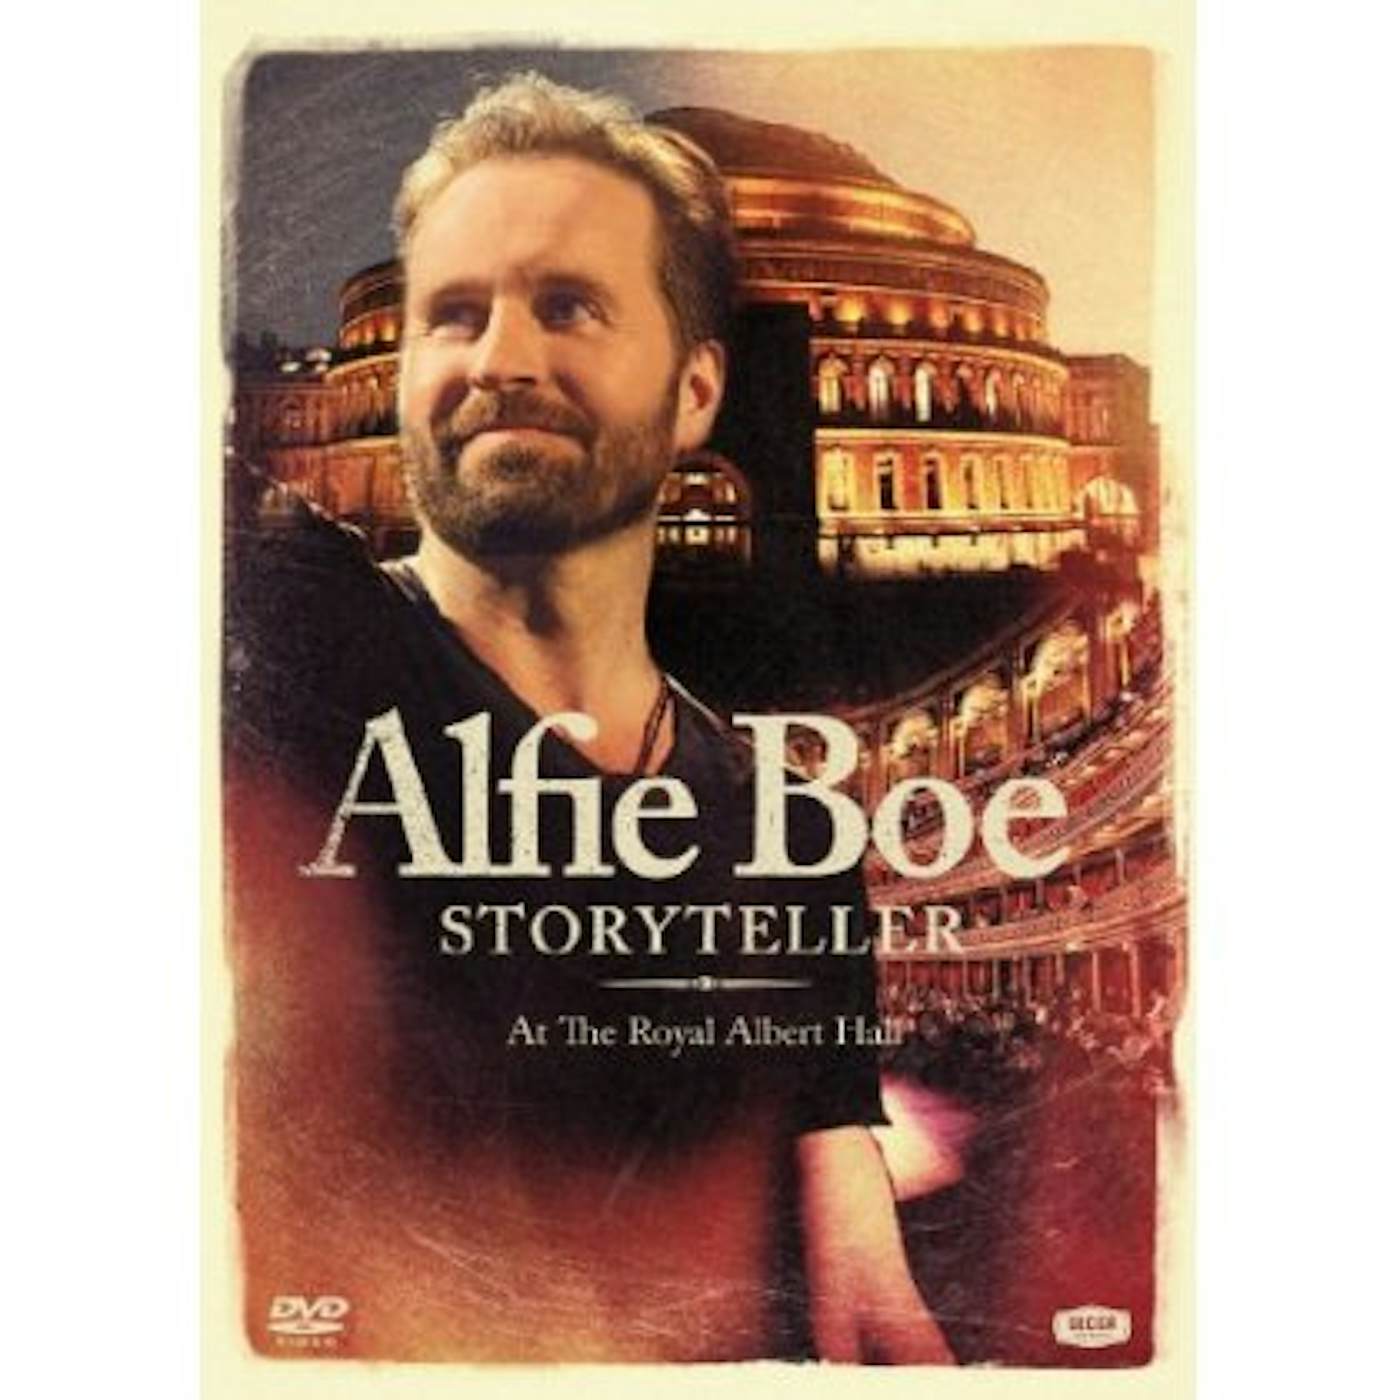 Alfie Boe STORYTELLER AT THE ROYAL ALBERT HALL CD